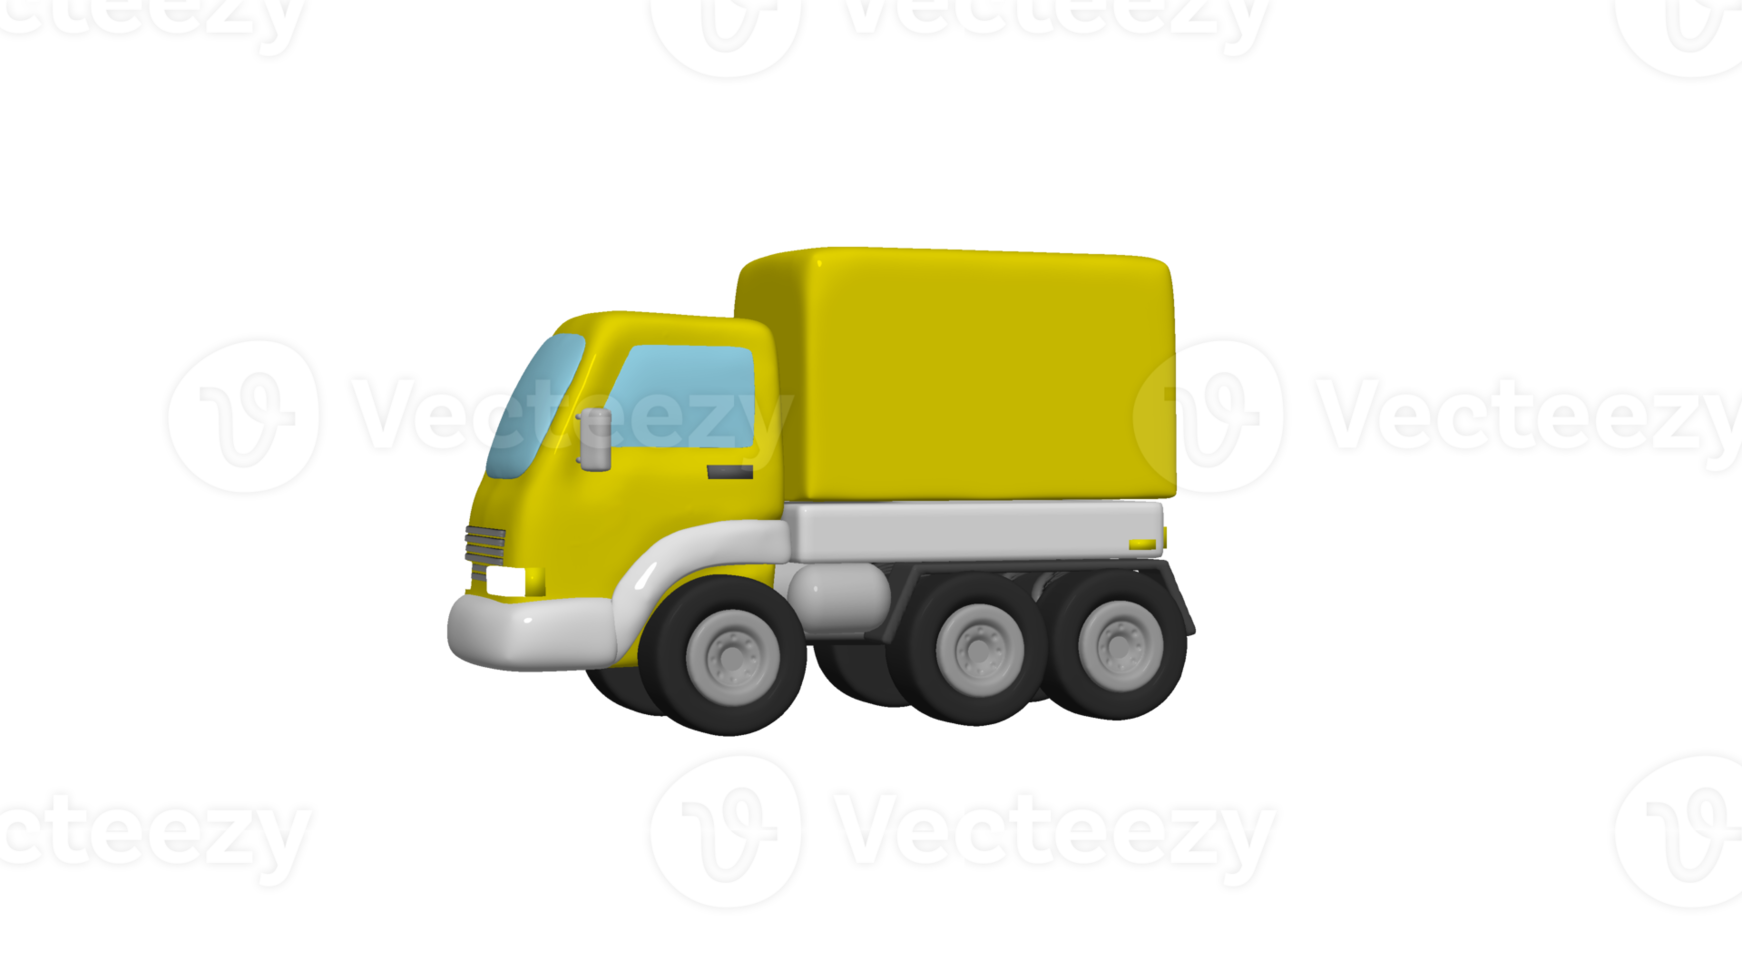 consegna camion cartone animato 3d png